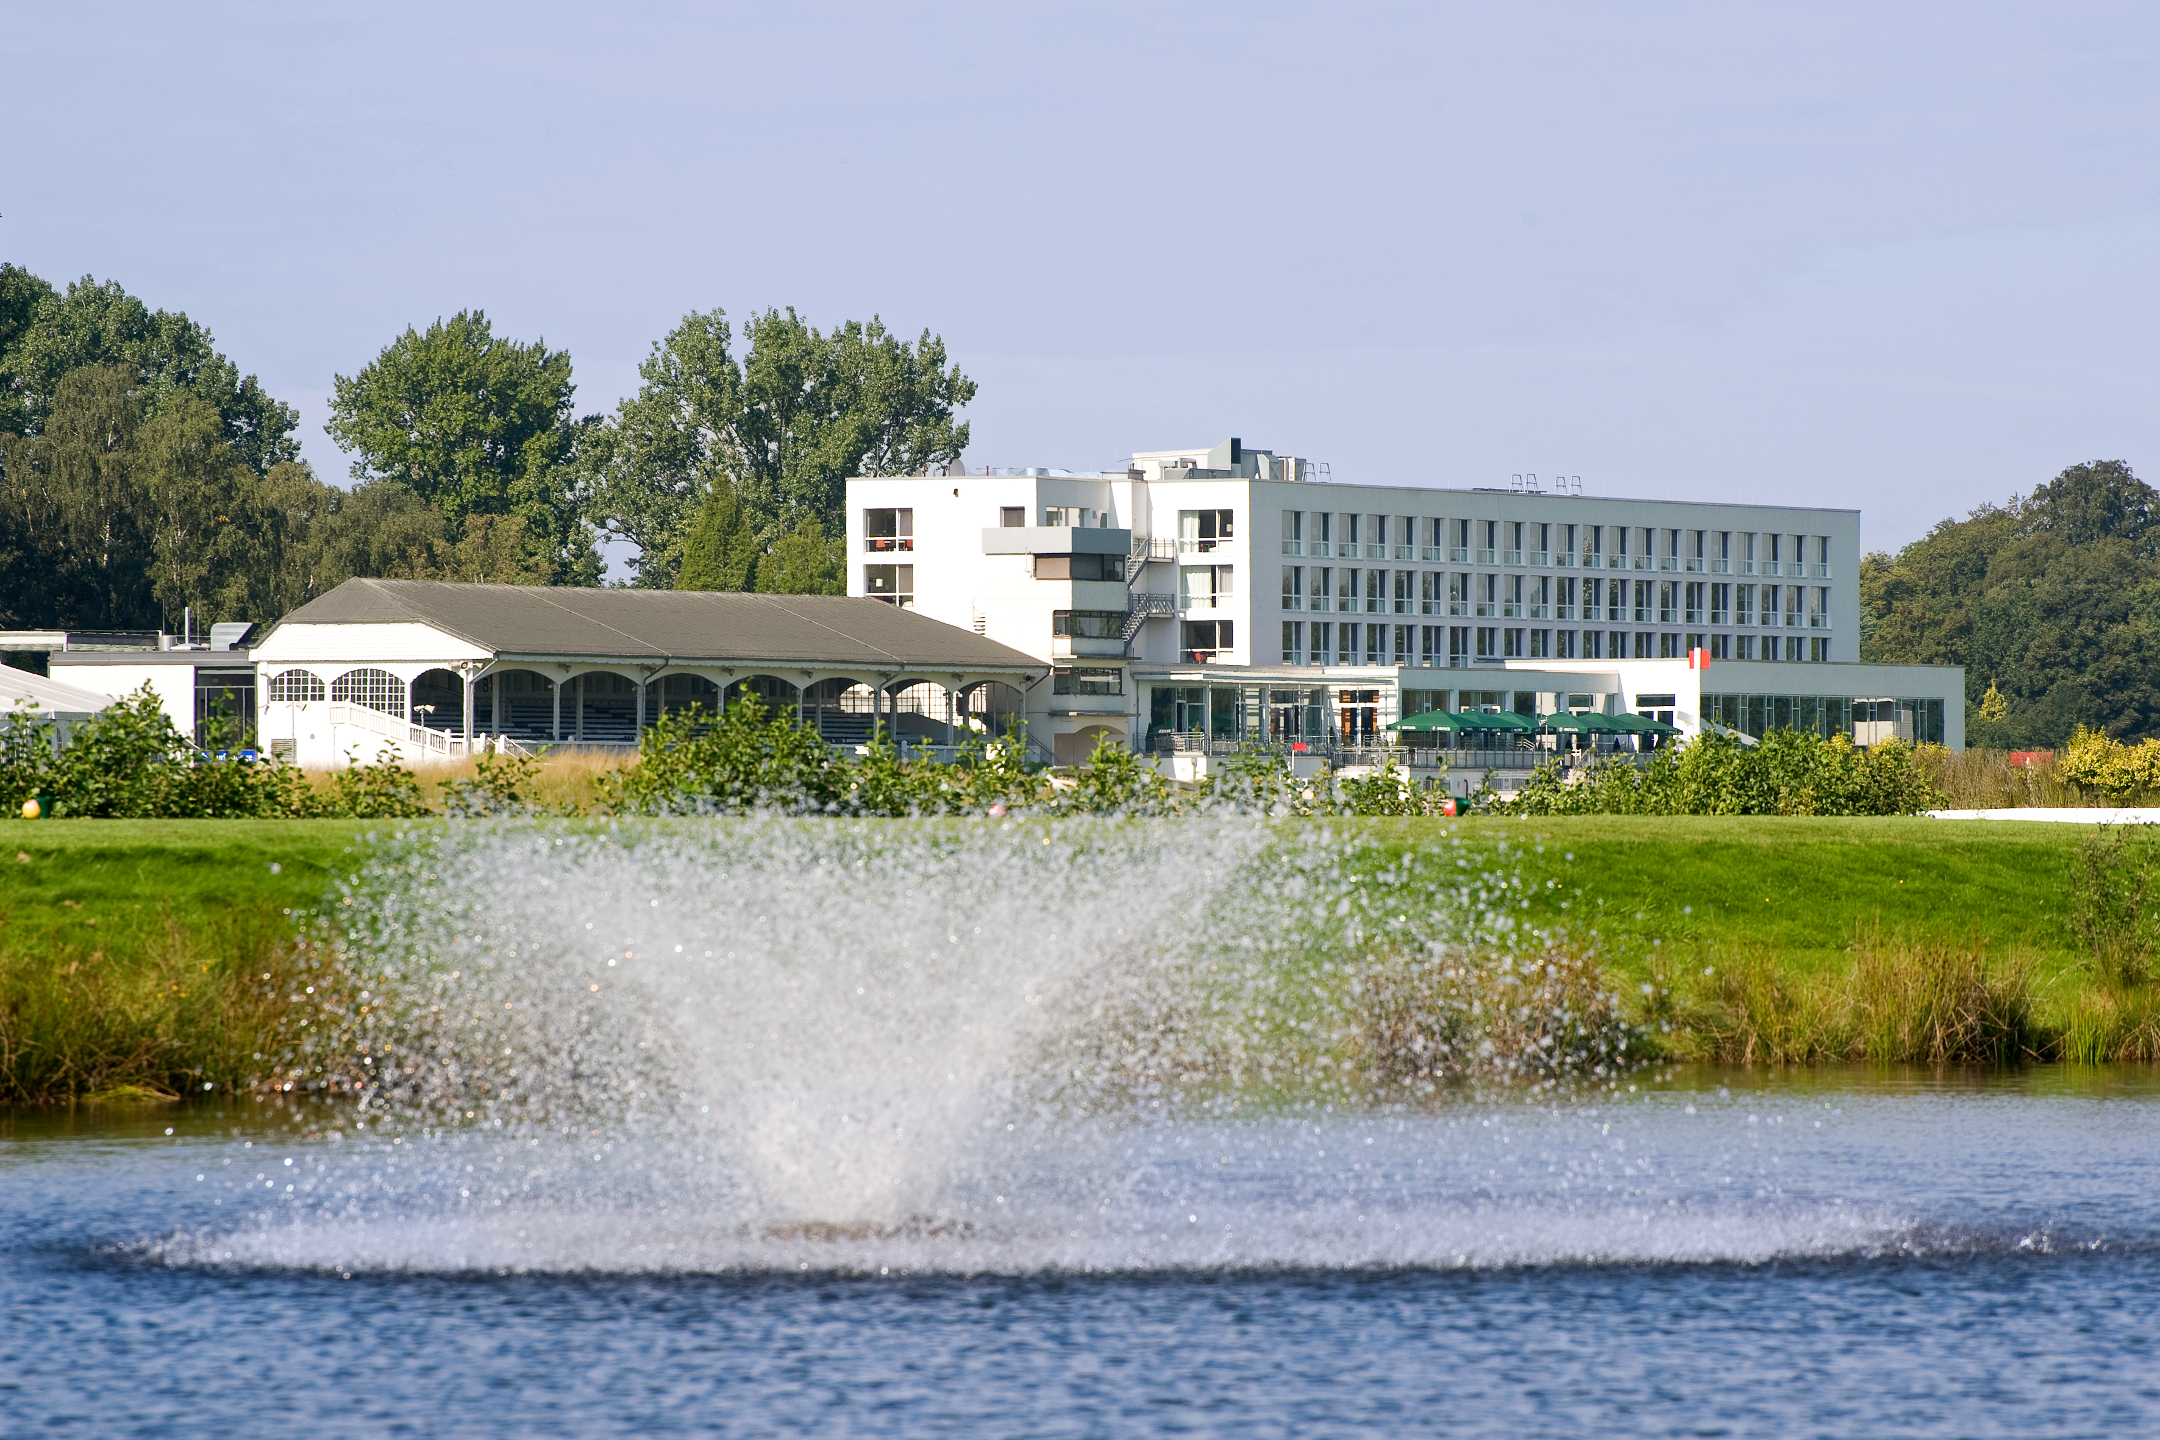 Außenansicht des ATLANTIC Hotel Galopprennbahn Bremen mit seinen schönen Grünanlagen